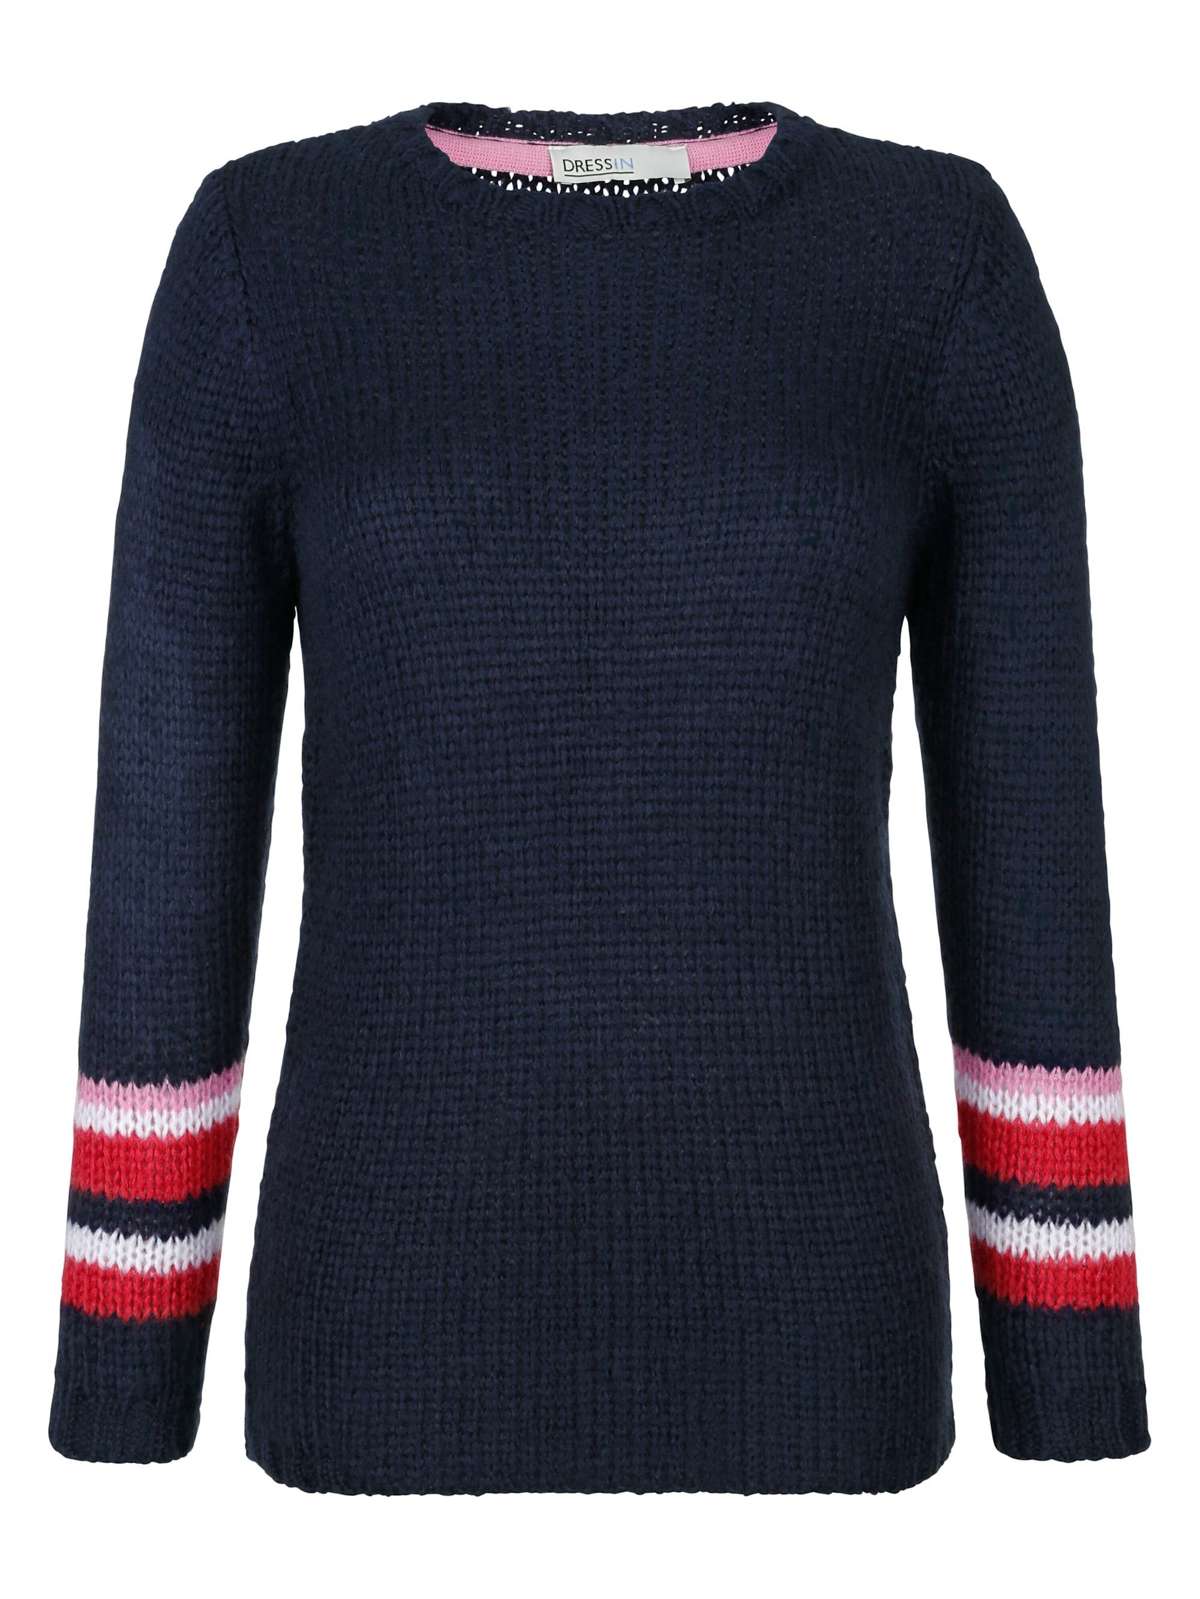 Вязаный пуловер-свитер свободной вязки.